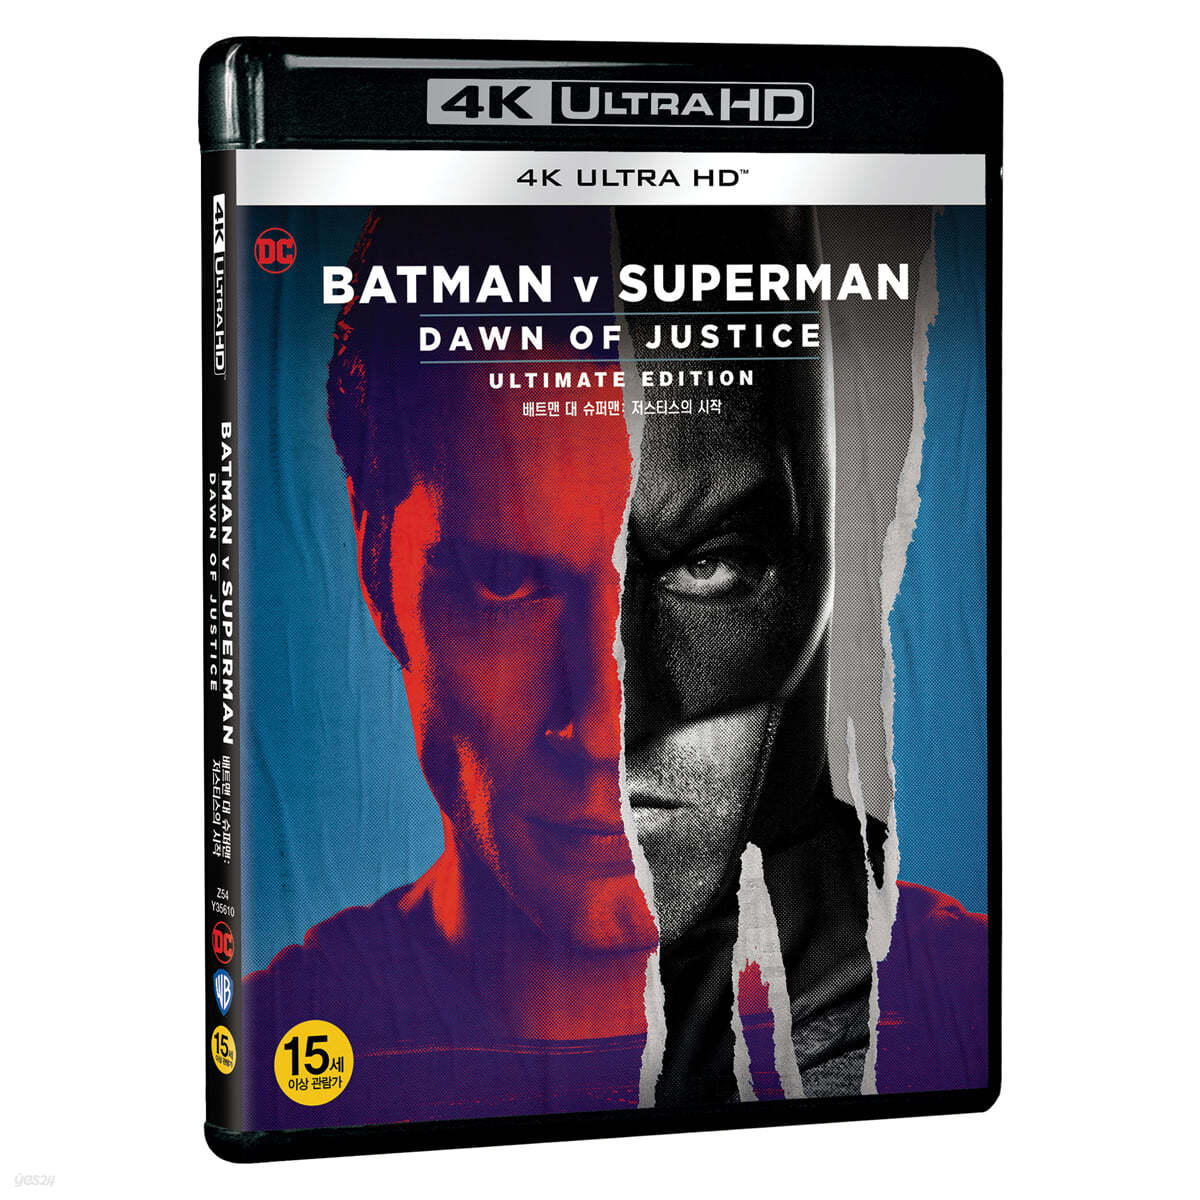 배트맨 대 슈퍼맨: 저스티스의 시작 리마스터링 (1Disc, 4K UHD 한정수량) : 블루레이